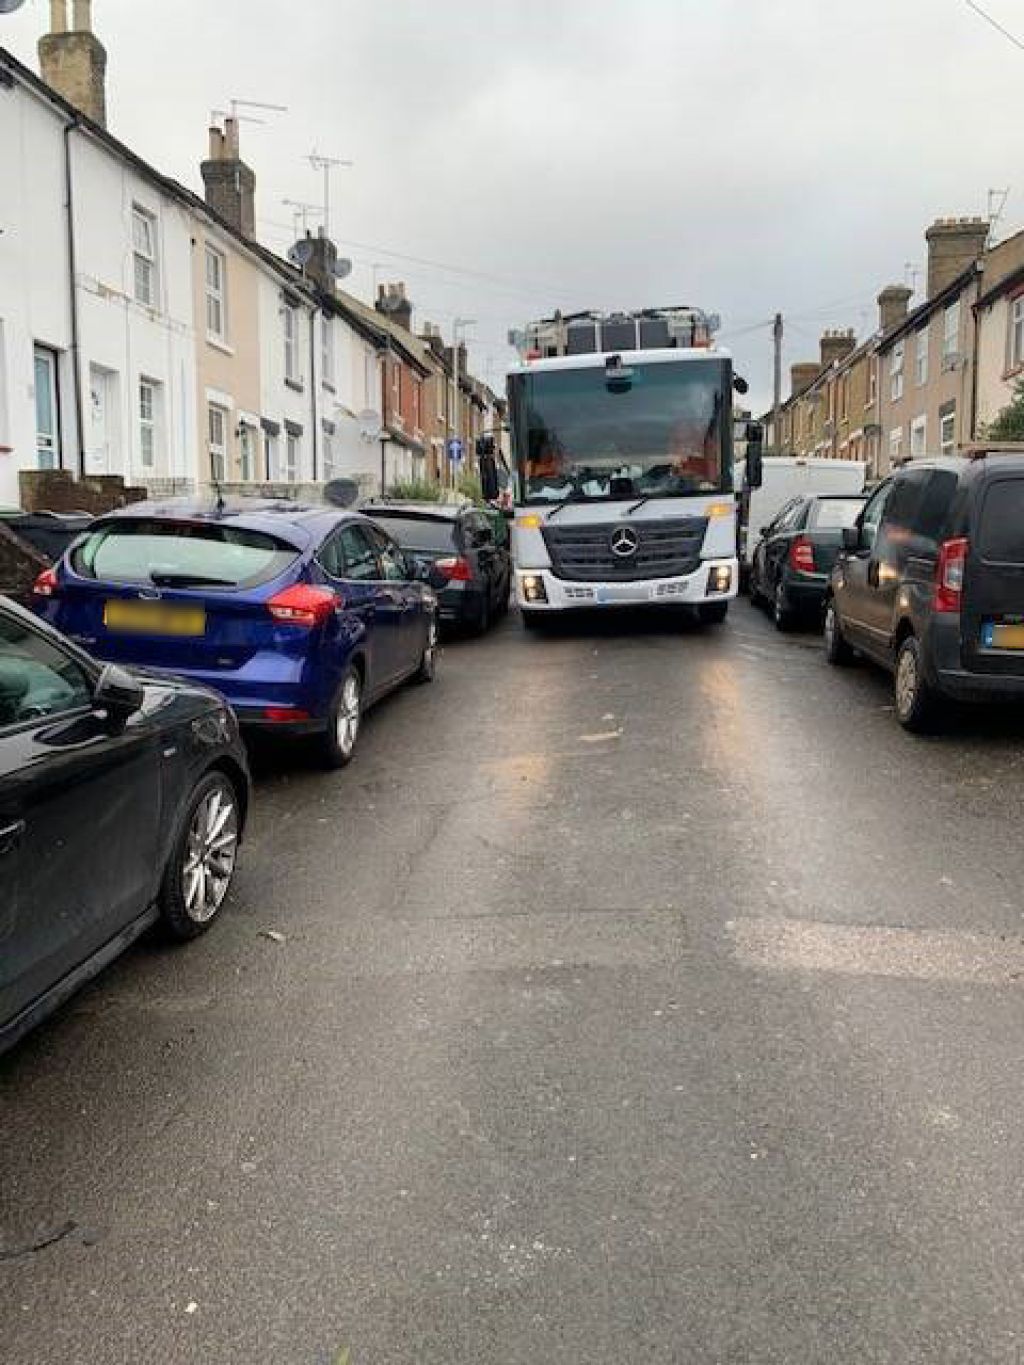  Don’t block roads urges Maidstone Borough Council  image